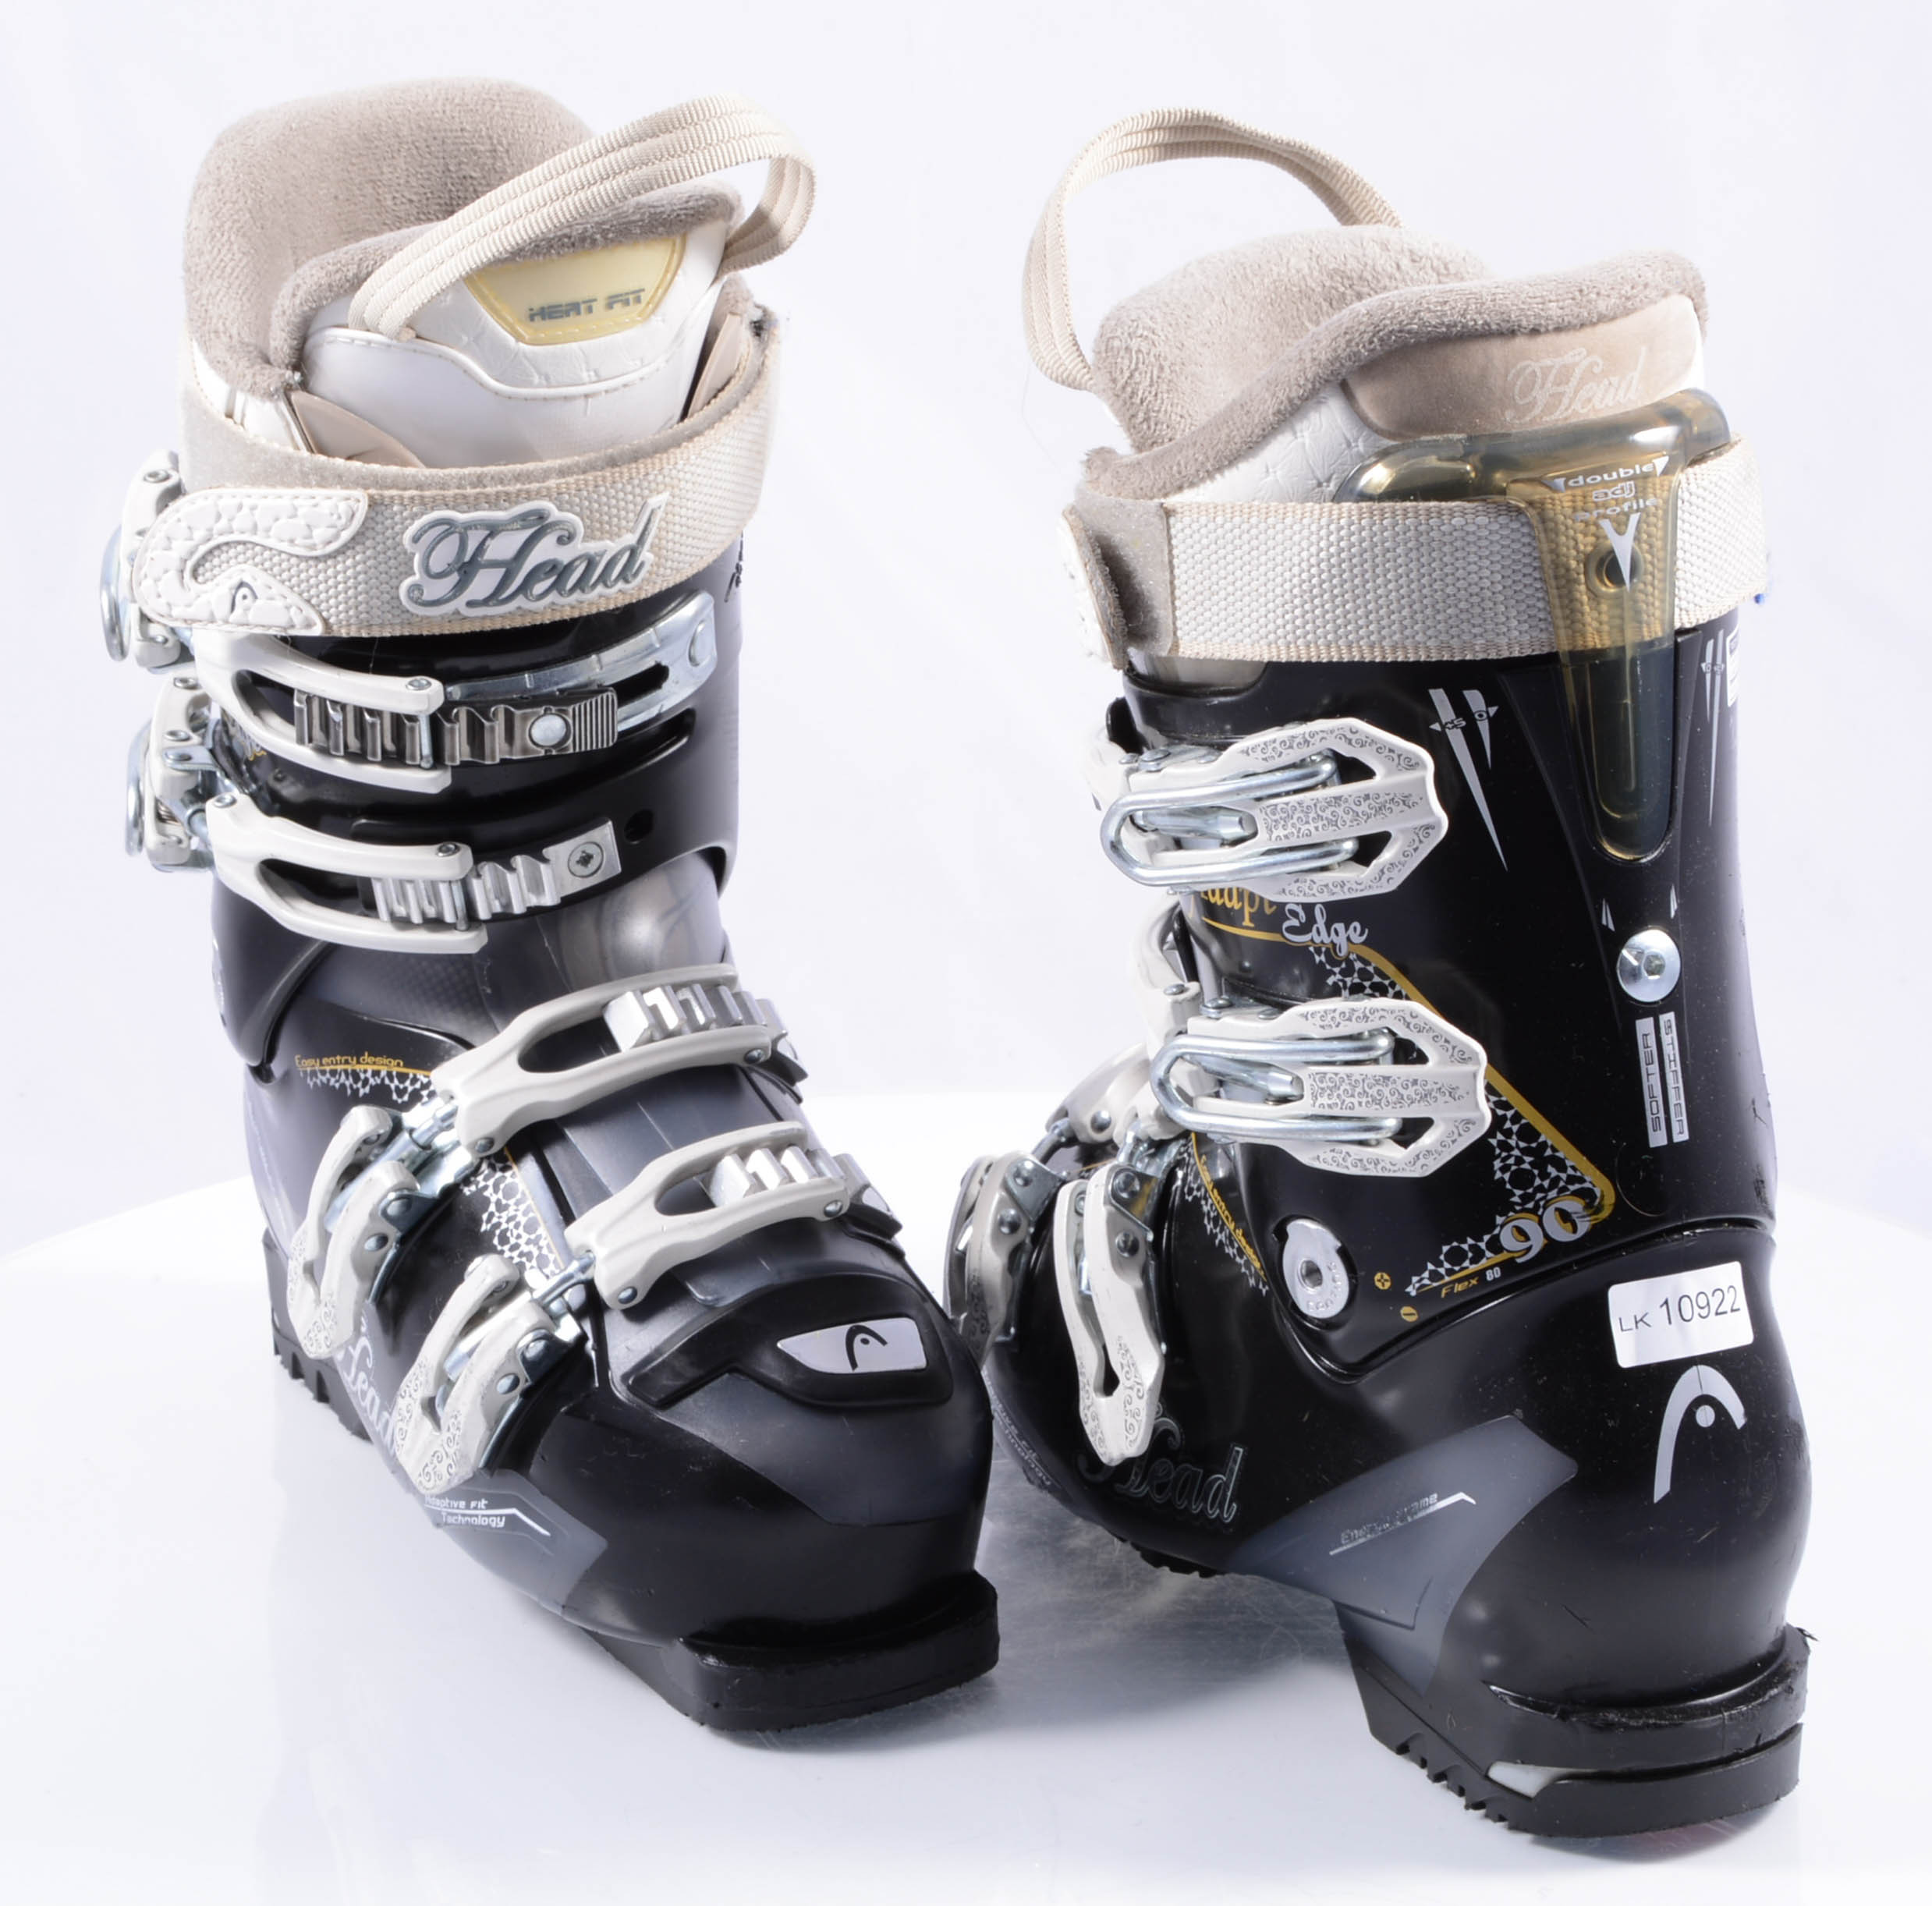 women's ski boots HEAD ADAPT EDGE 90, energy frame, easy entry